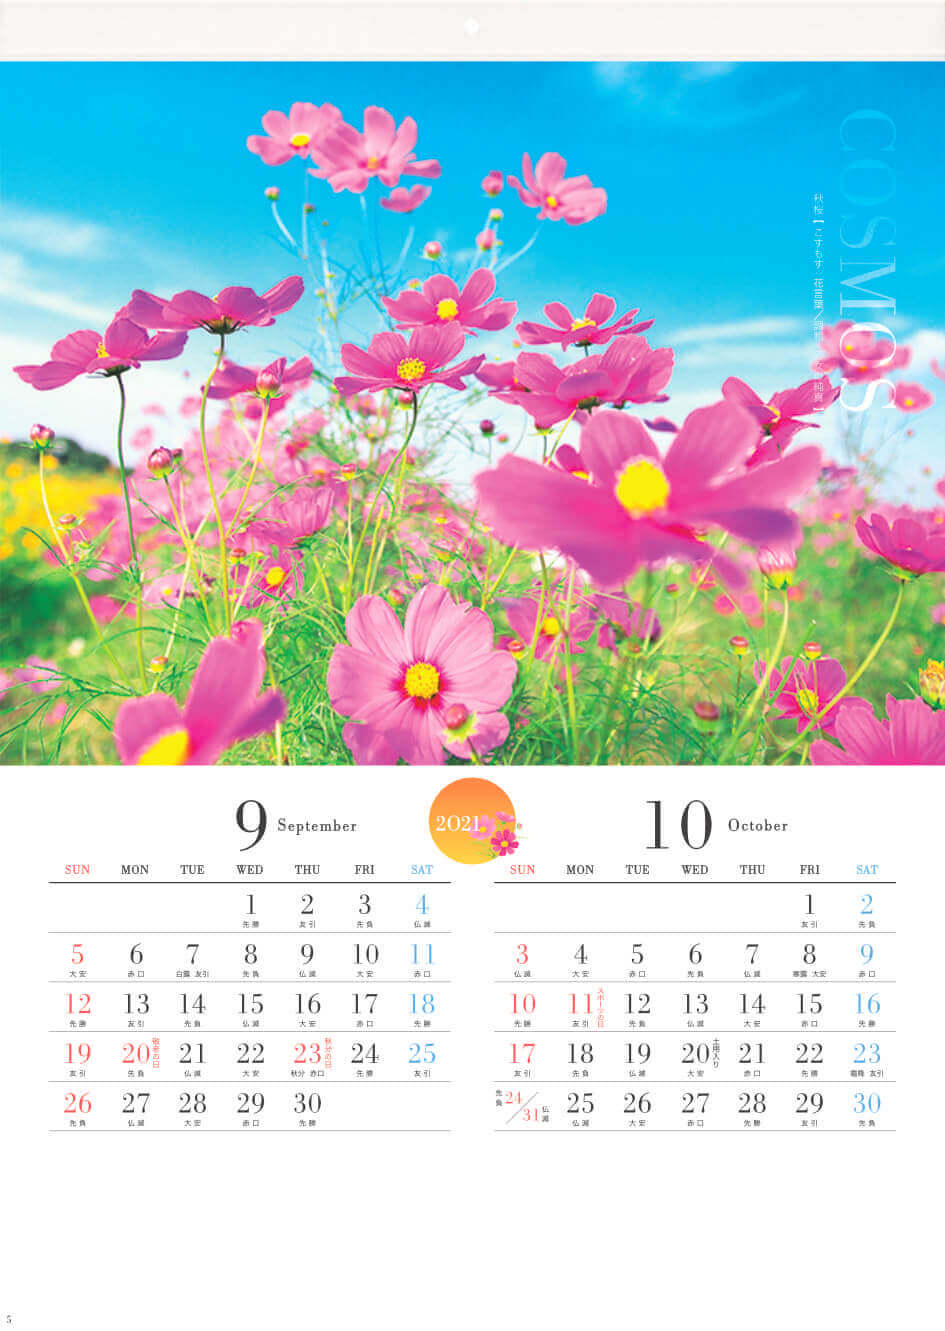 Ac 2 四季の花 21年カレンダー 桜 椿などの花の写真カレンダー カレンダーの通販サイト E カレンダー Com 1部からでも送料無料 でお届け